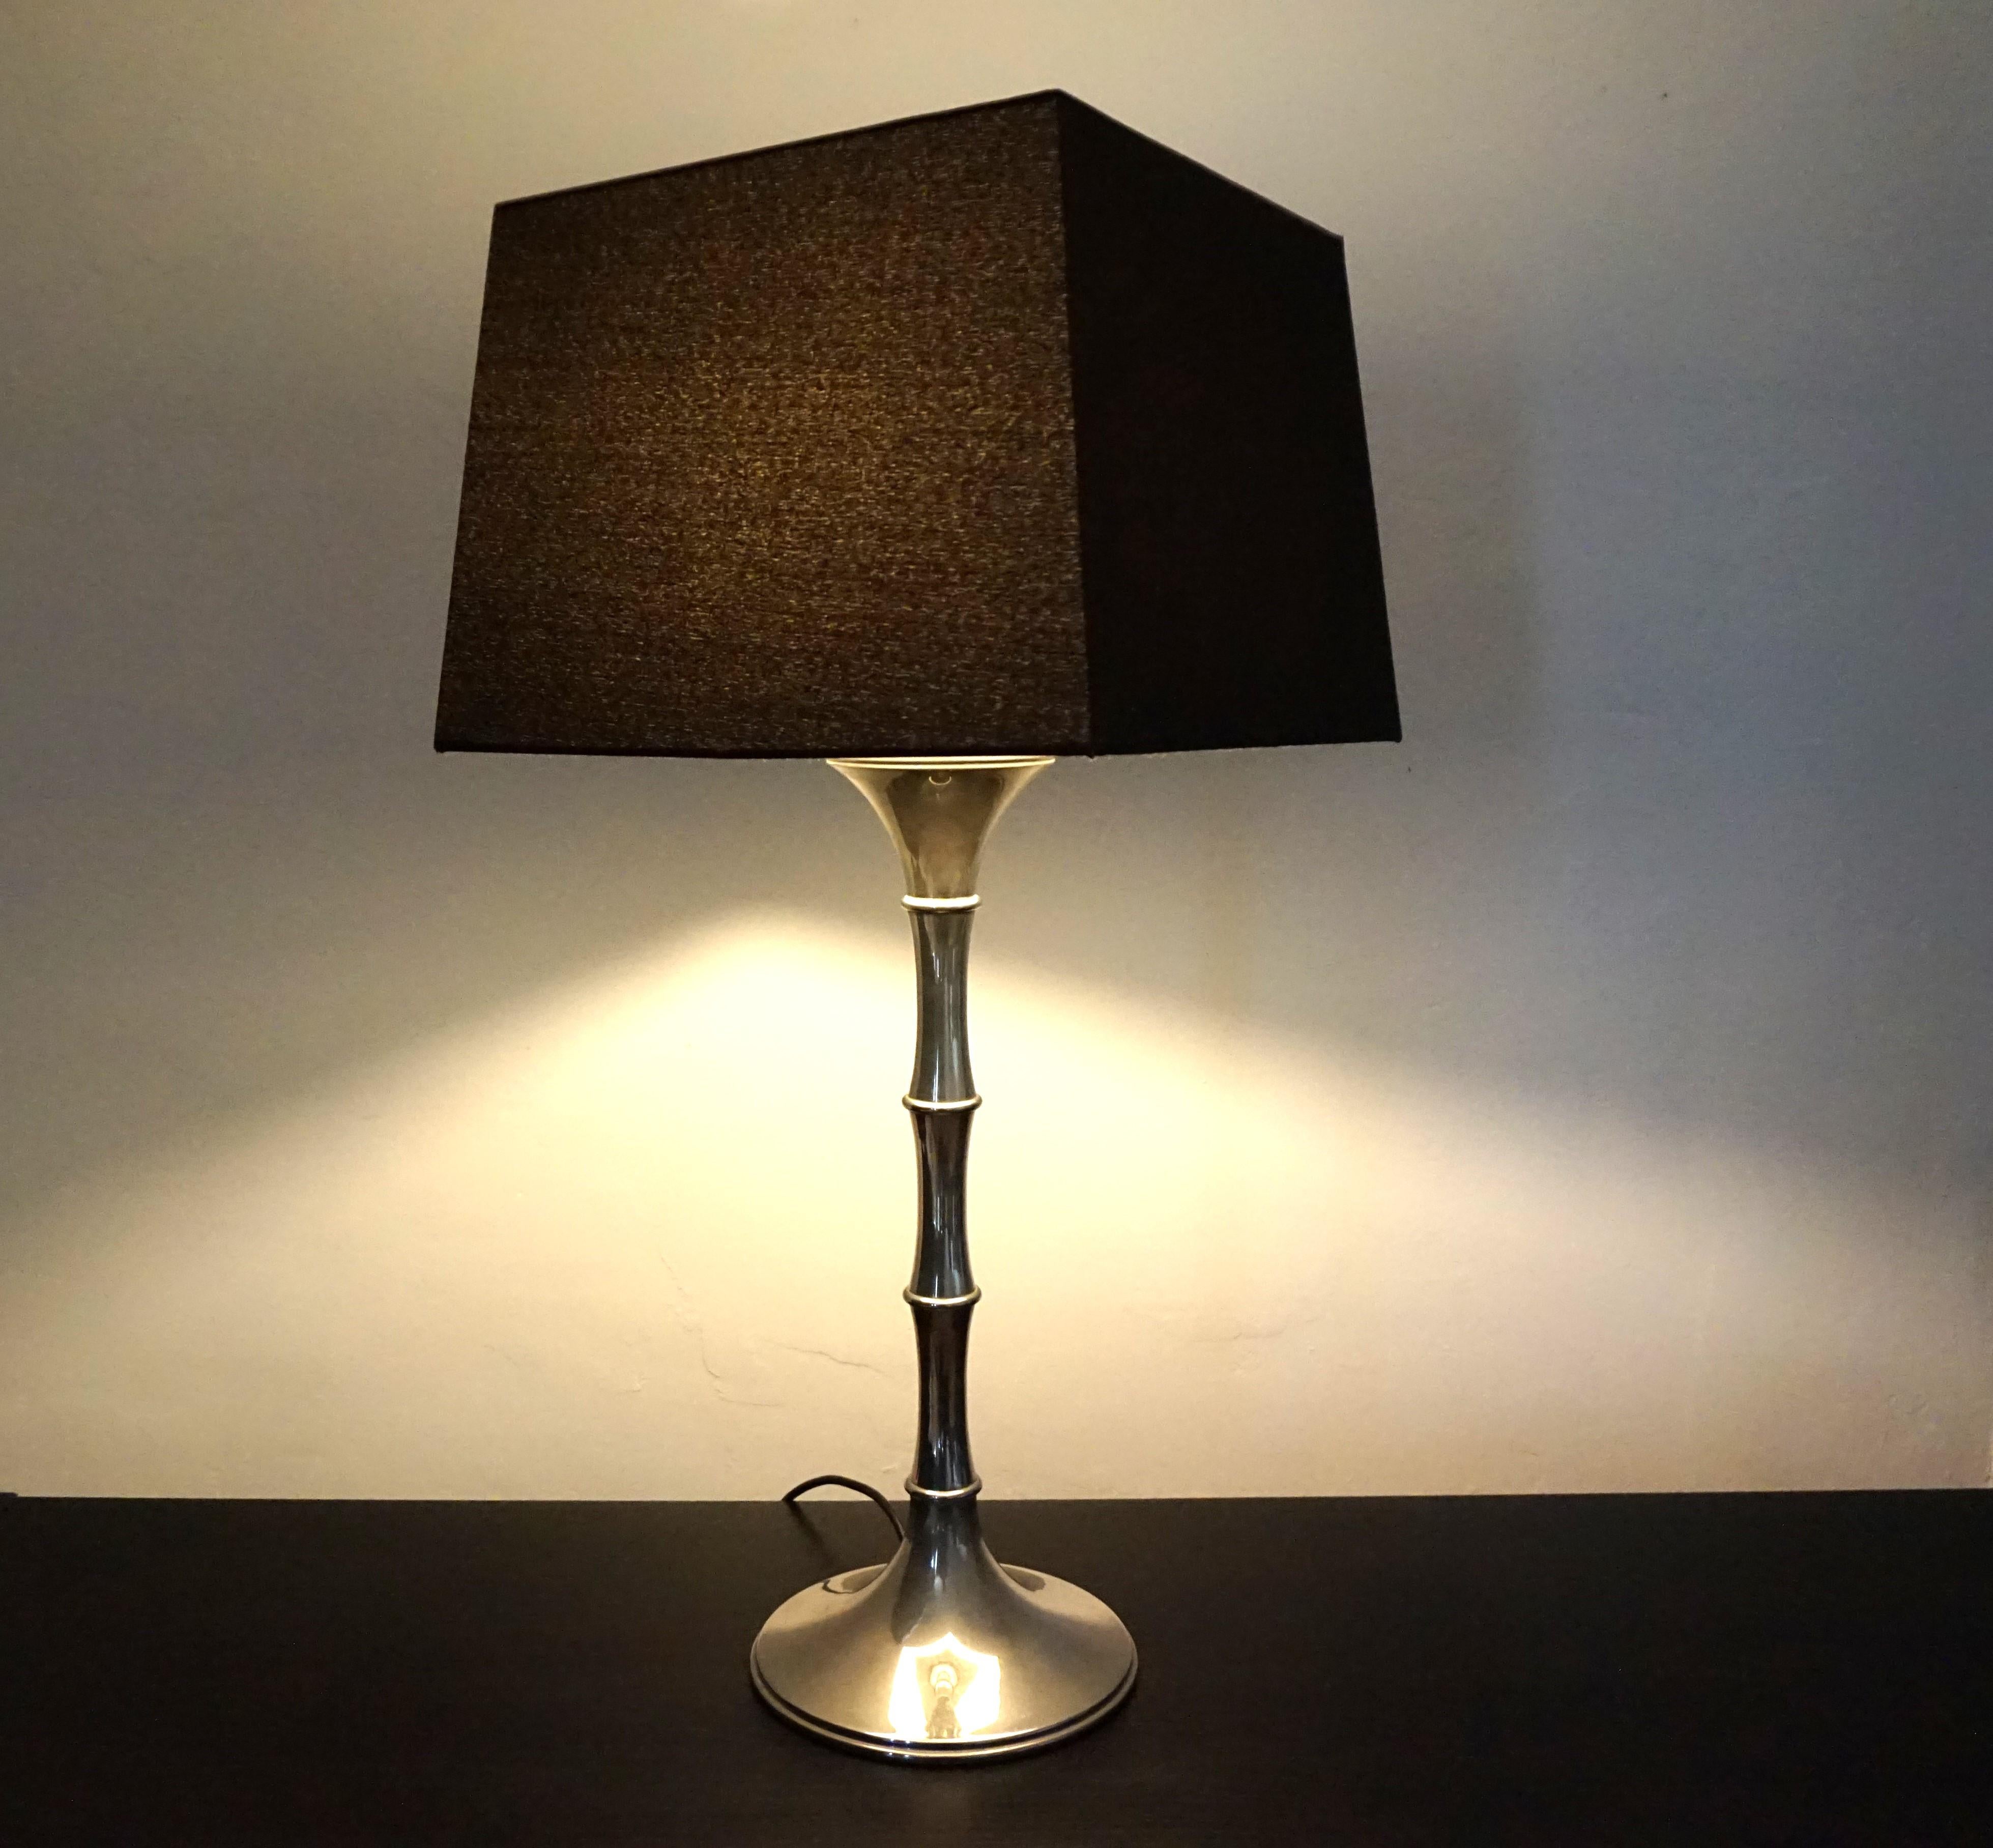 La lampe à poser en métal chromé est en très bon état et présente une belle patine. La lampe date des années 1960 et son design s'inspire d'un tronc de bambou. Ingo Maurer est connu pour ses lampes de haute qualité. La lampe de table a été recâblée.